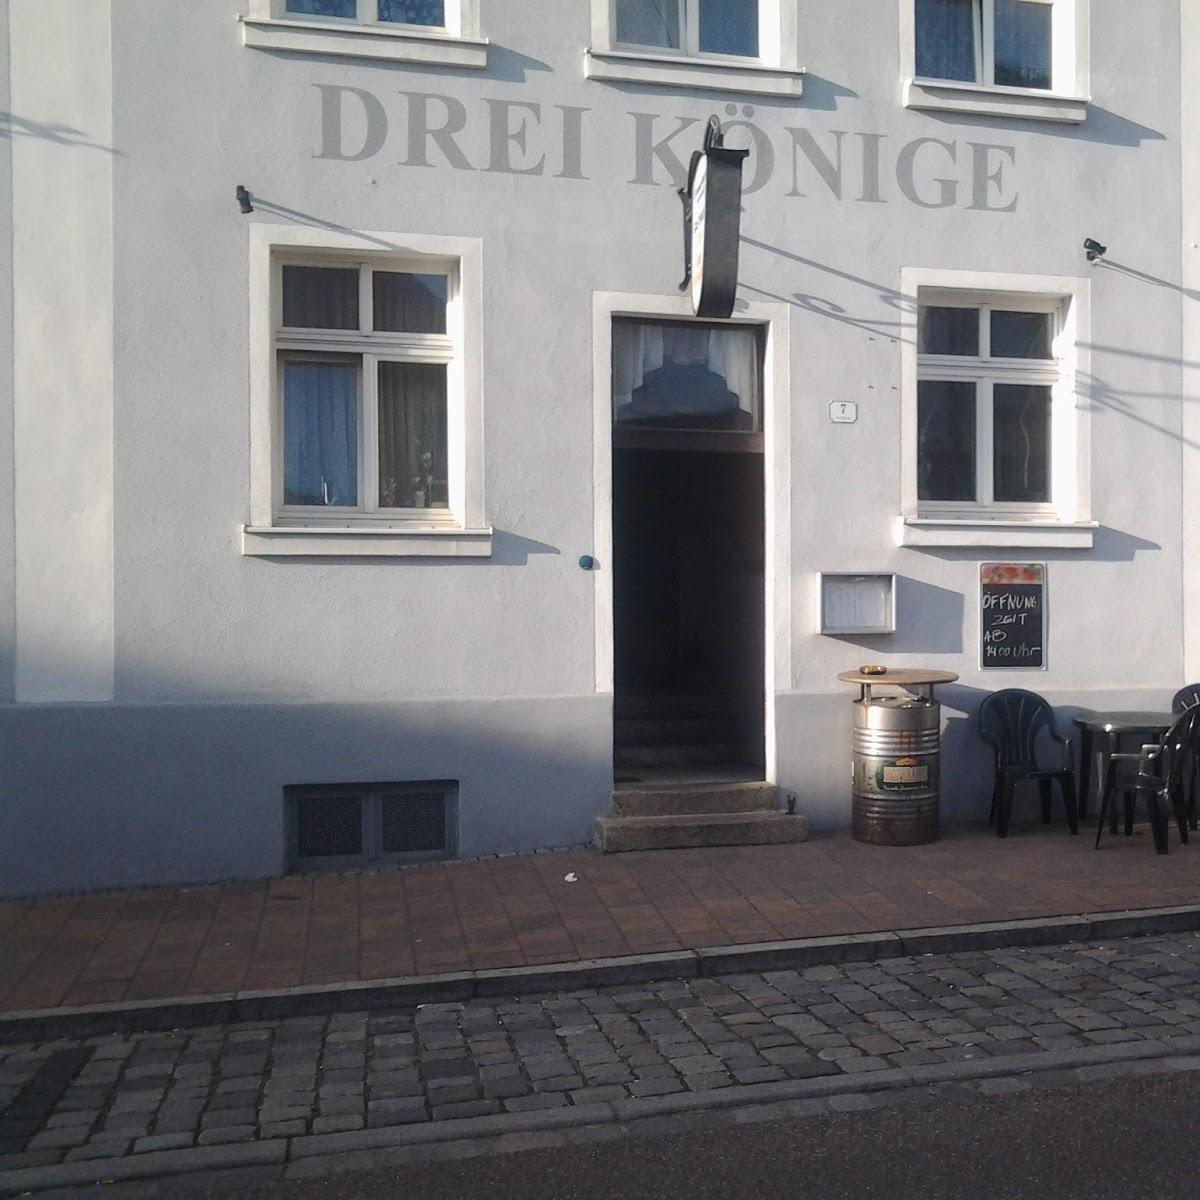 Restaurant "Drei König" in Ansbach